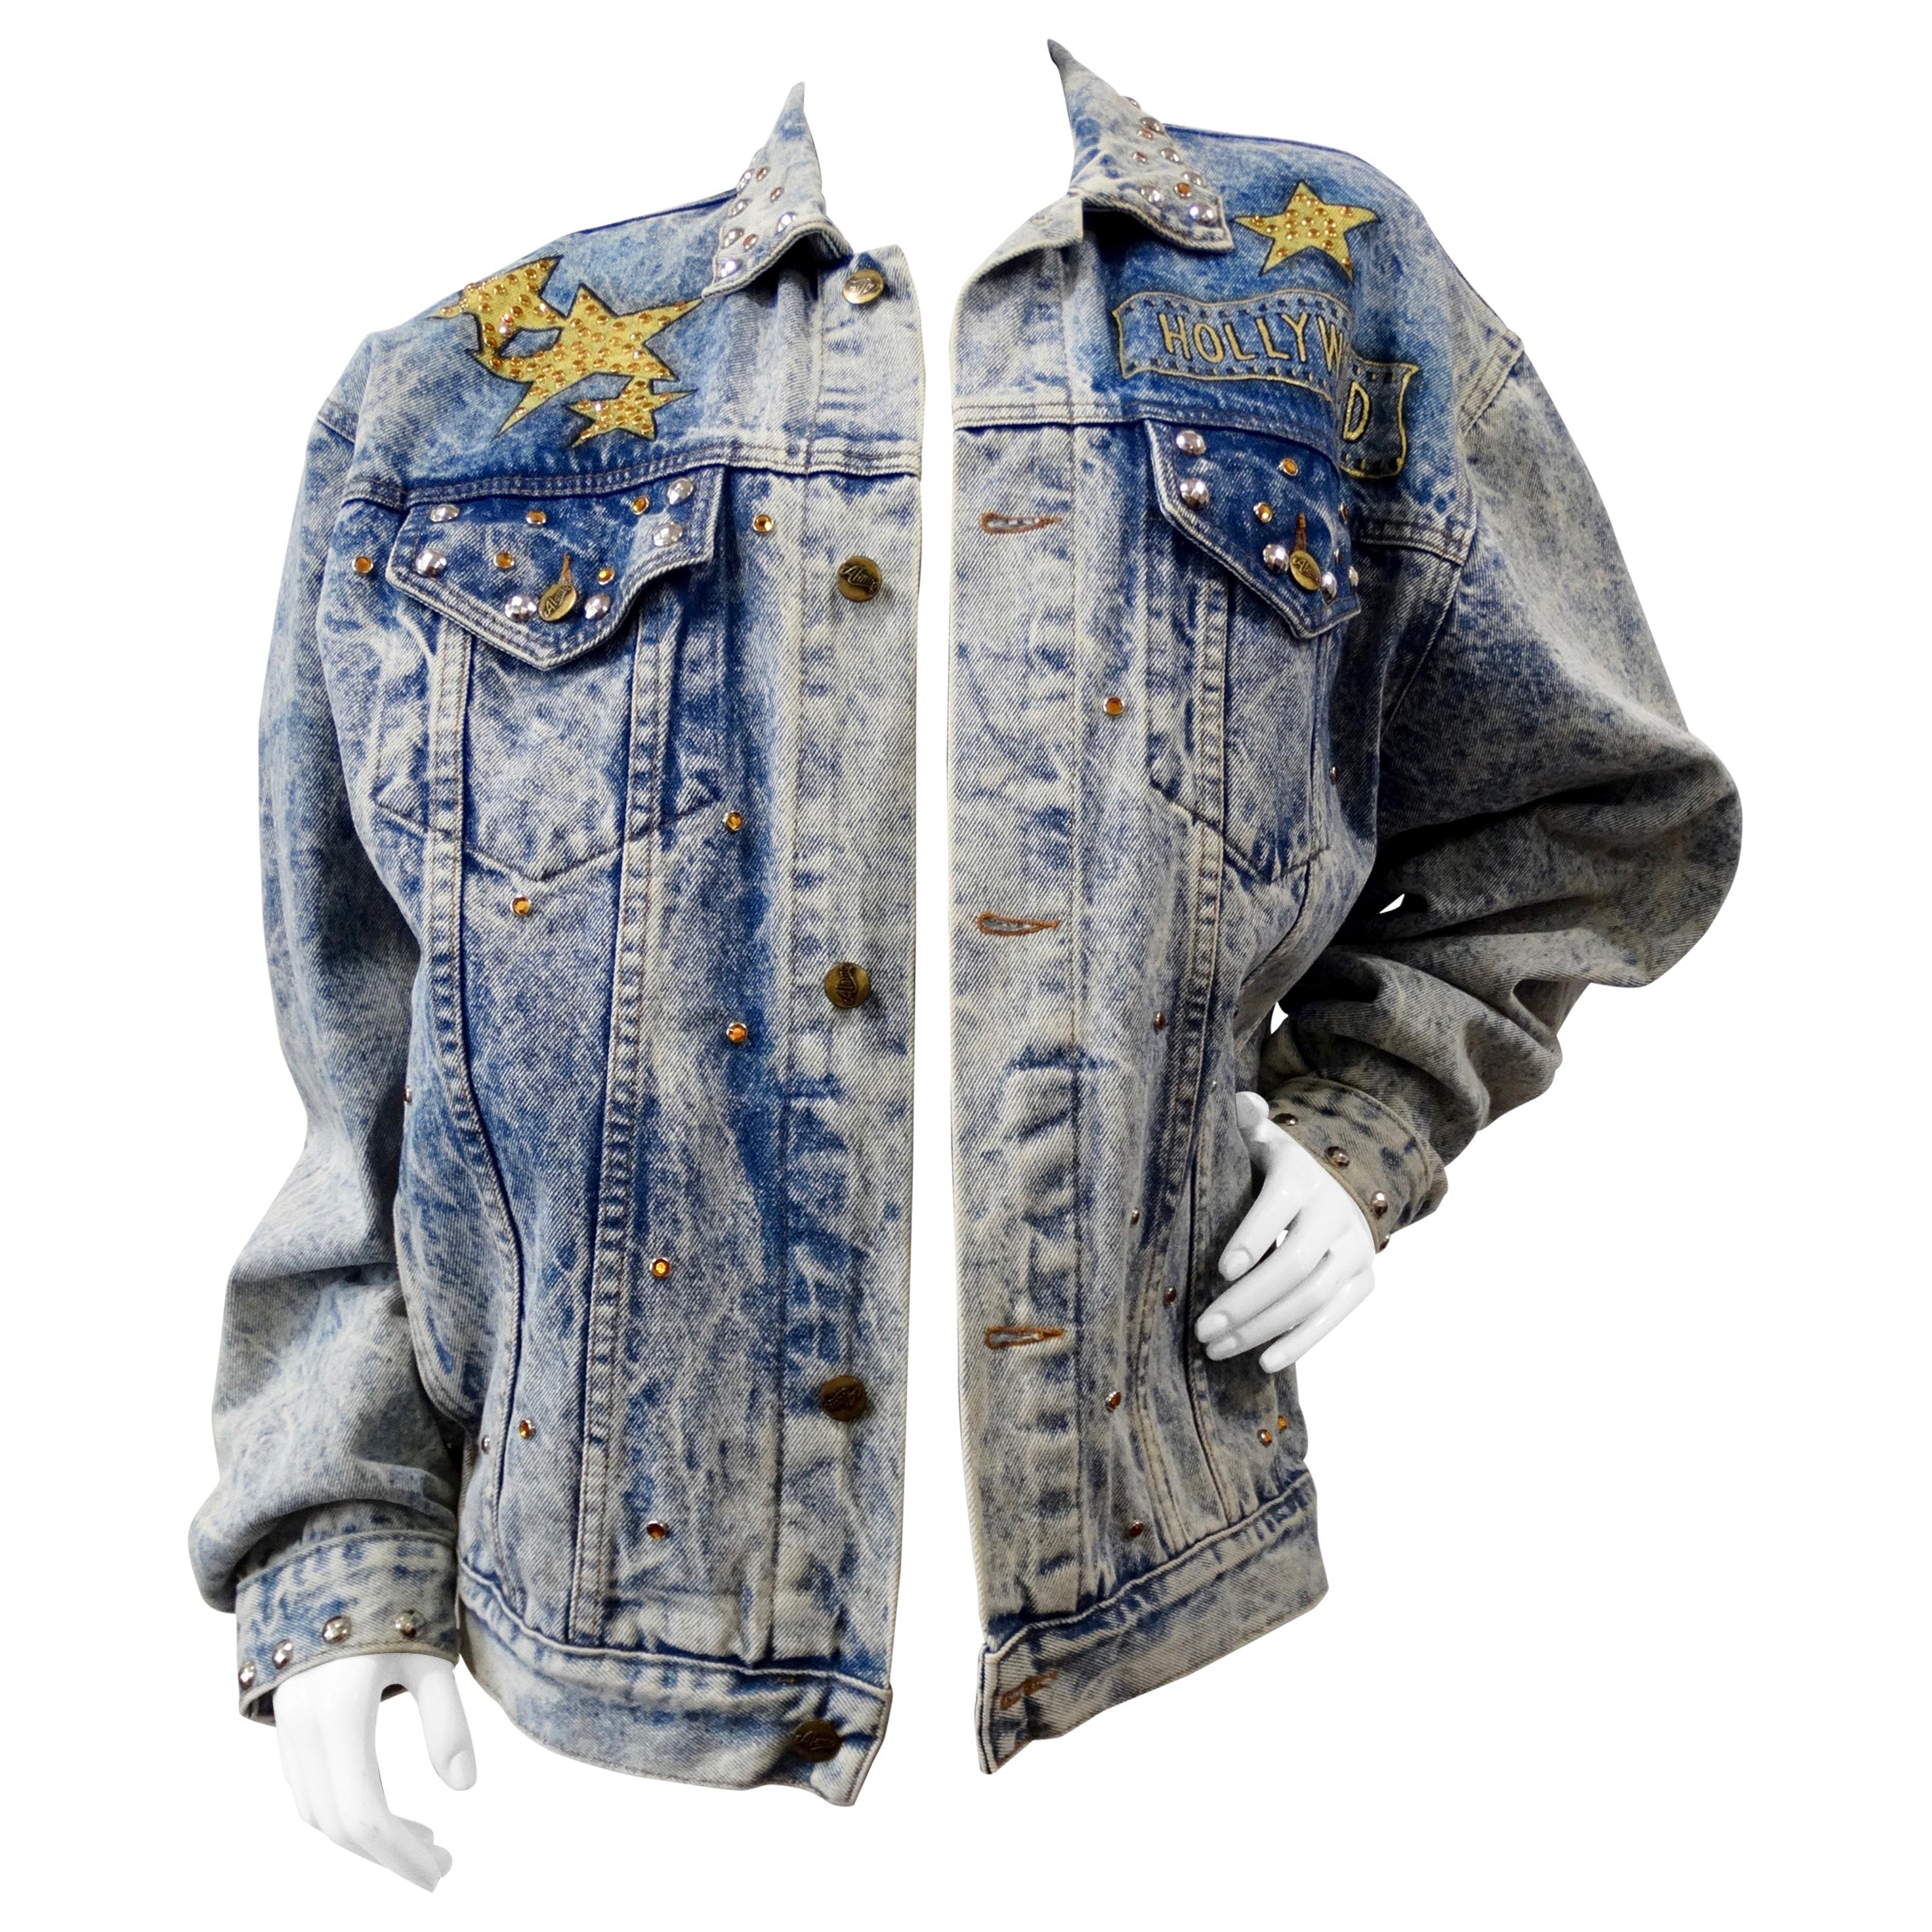 Tony Alamo "Hollywood" Rhinestone Embellished Jean Jacket